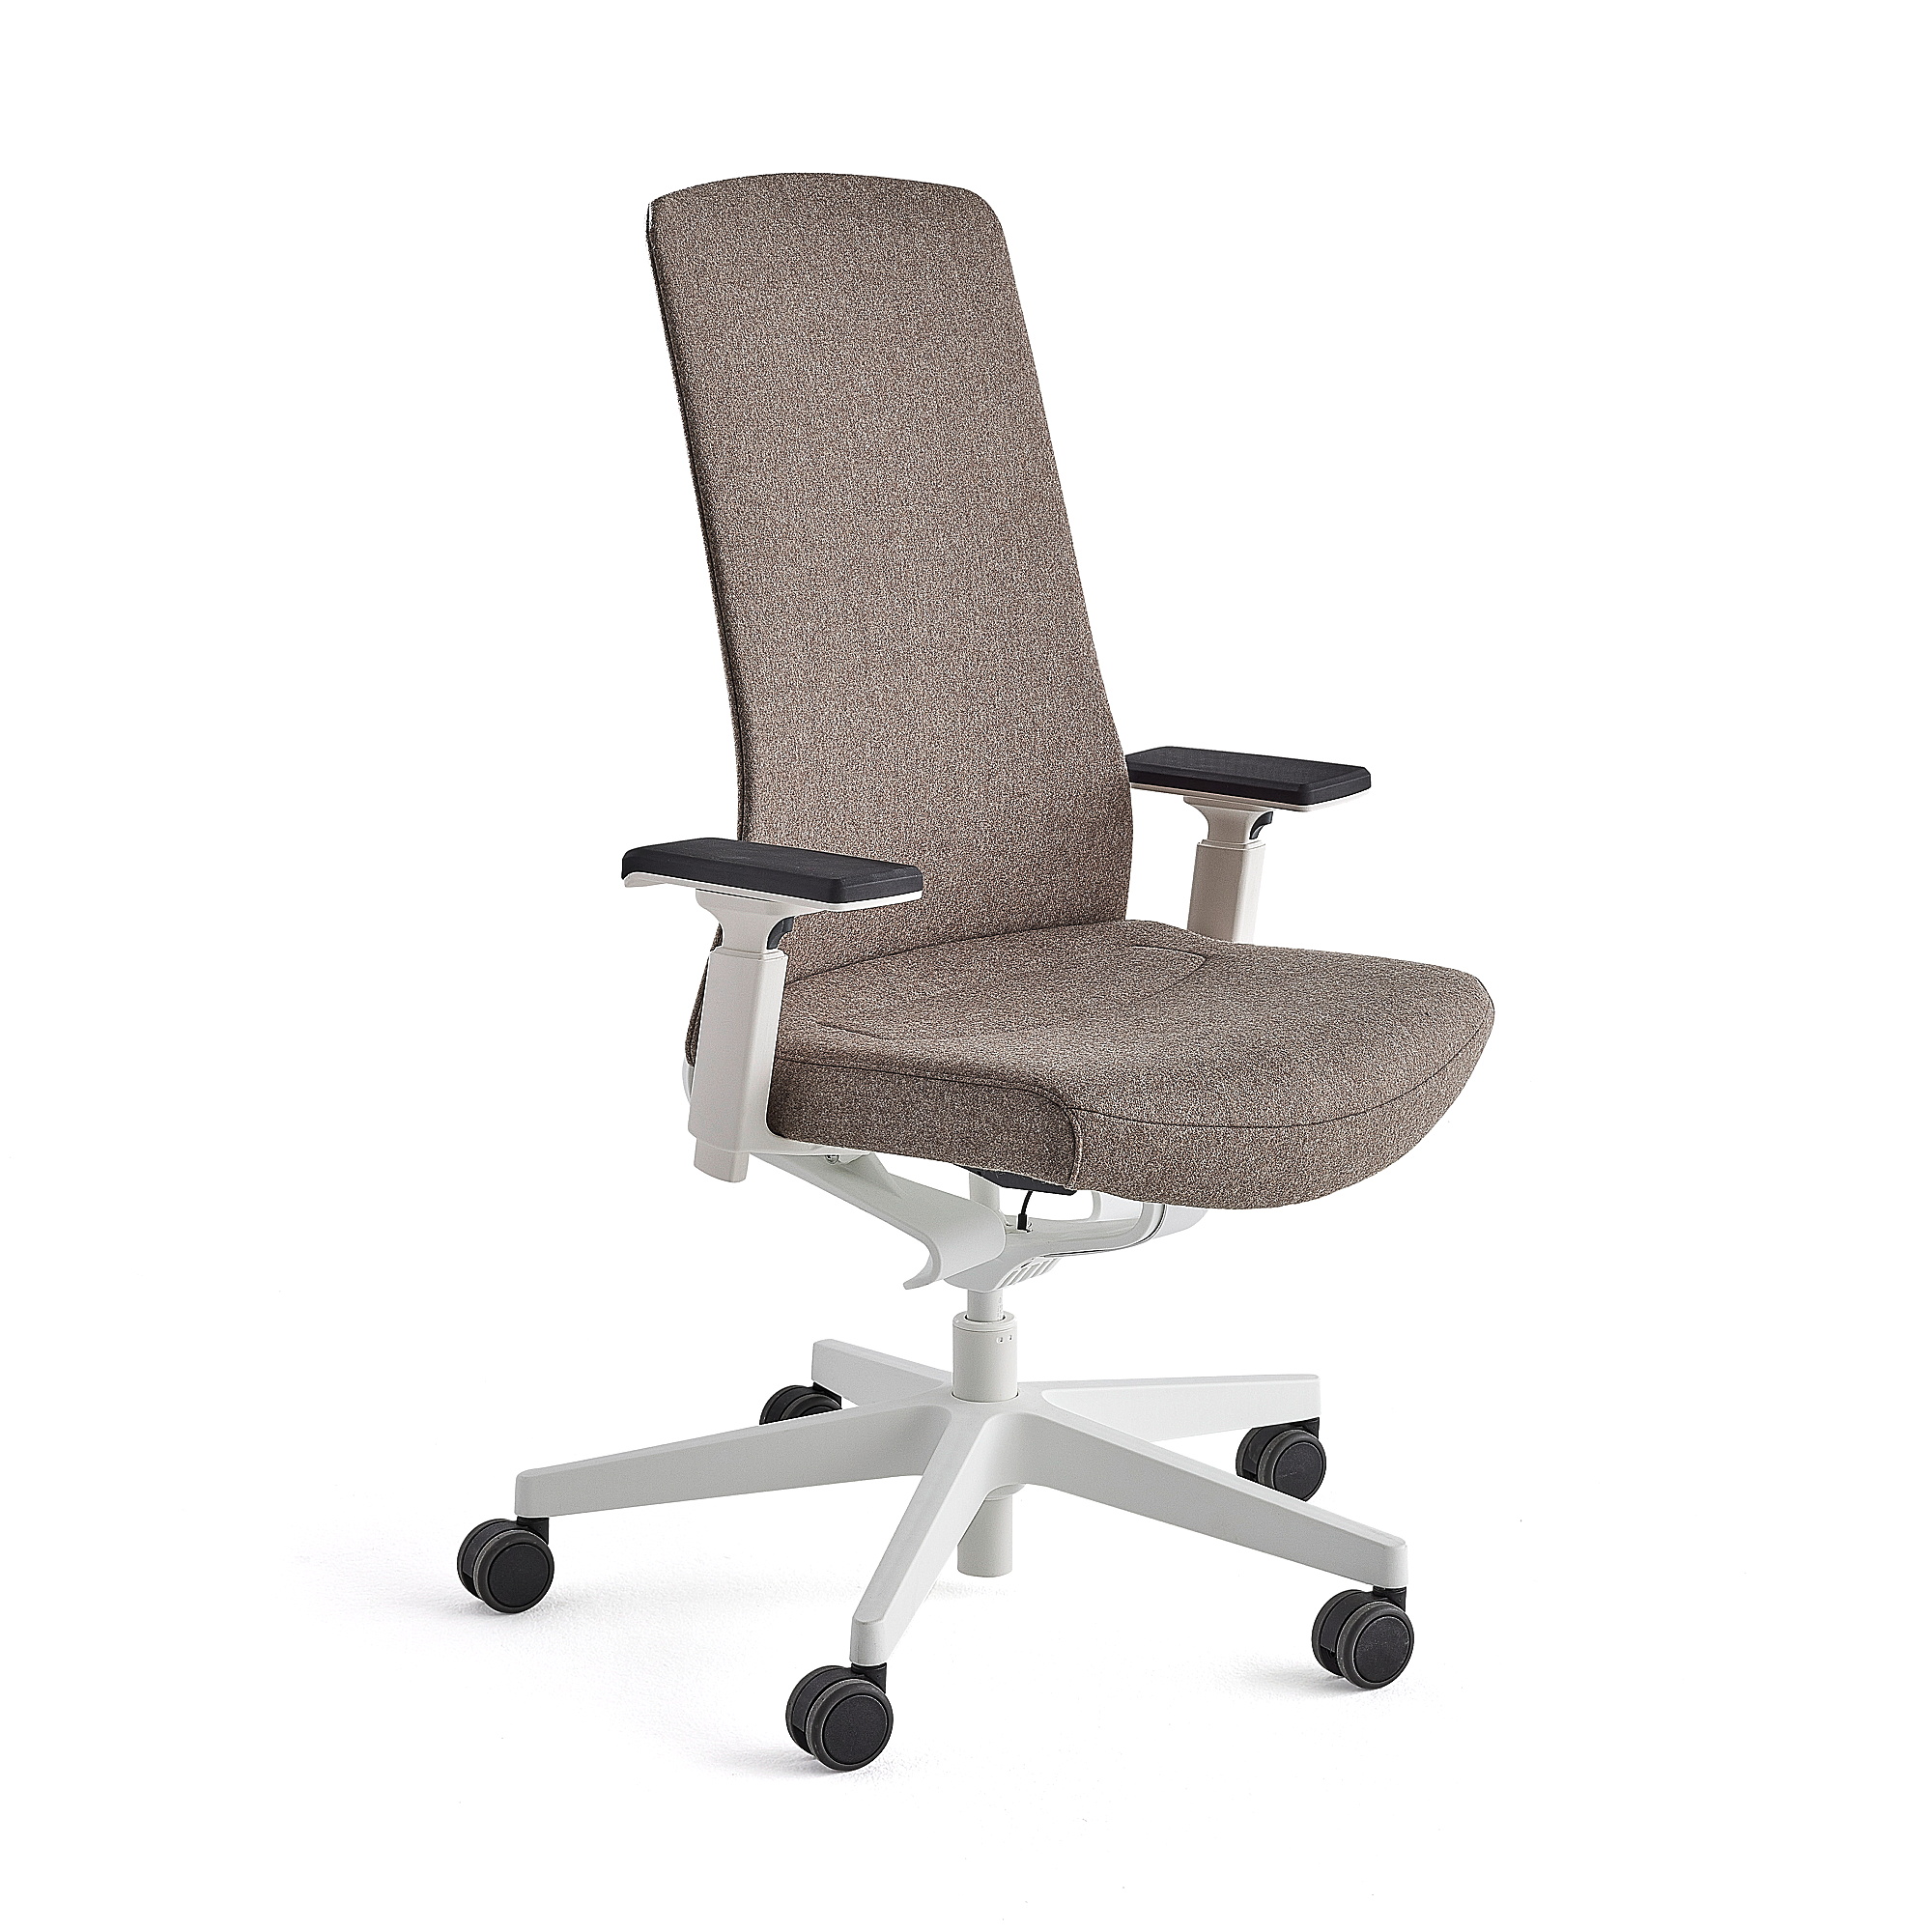 E-shop Kancelárska stolička BELMONT, biela/svetlohnedá